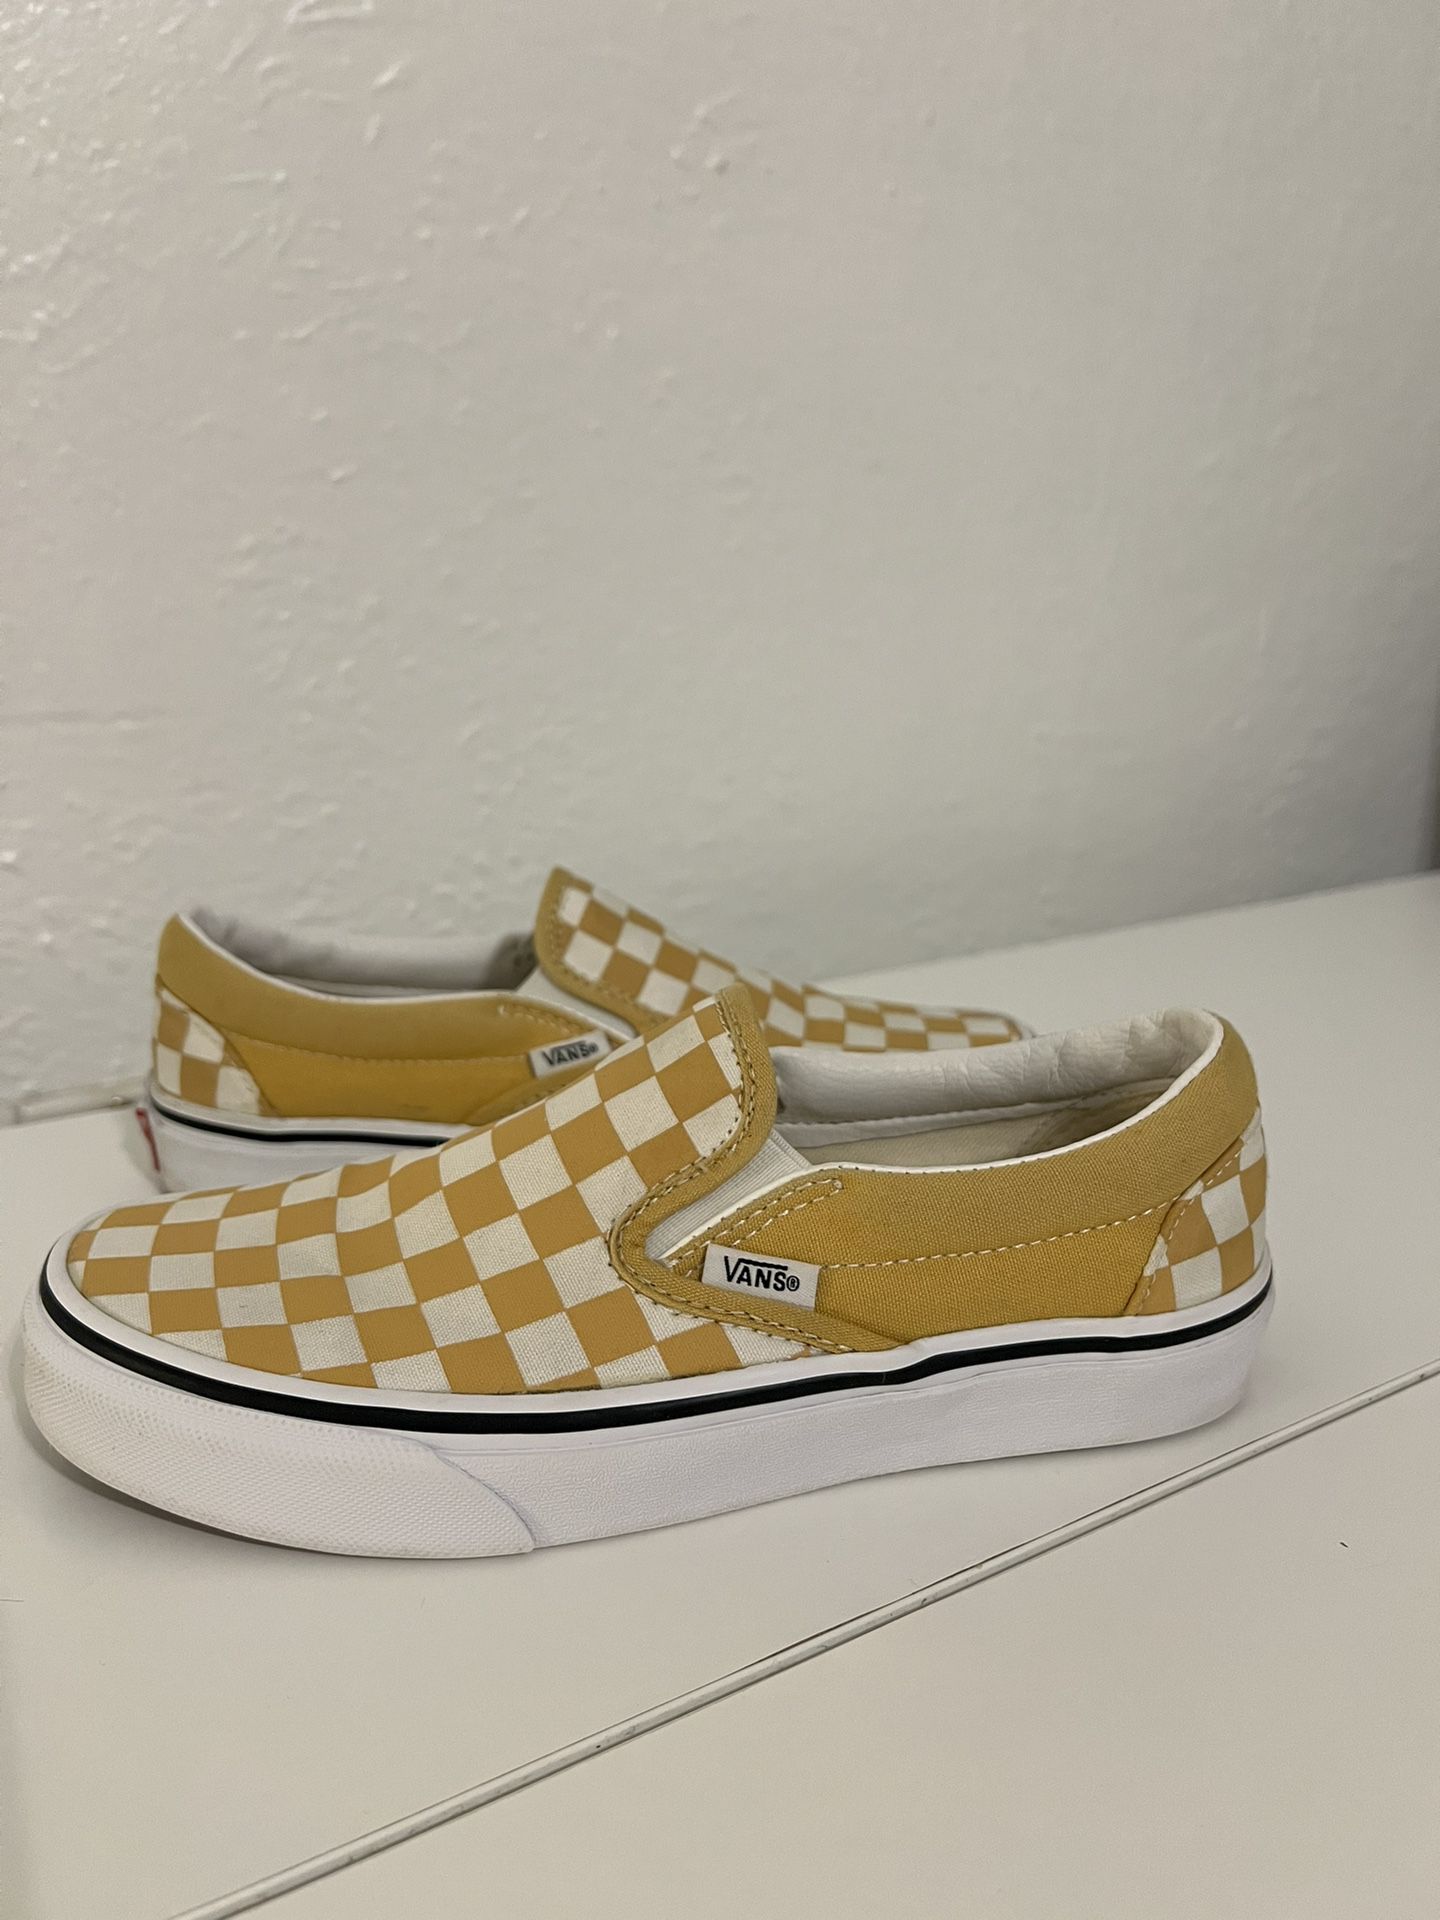 Vans Slip On Checkered Gold 